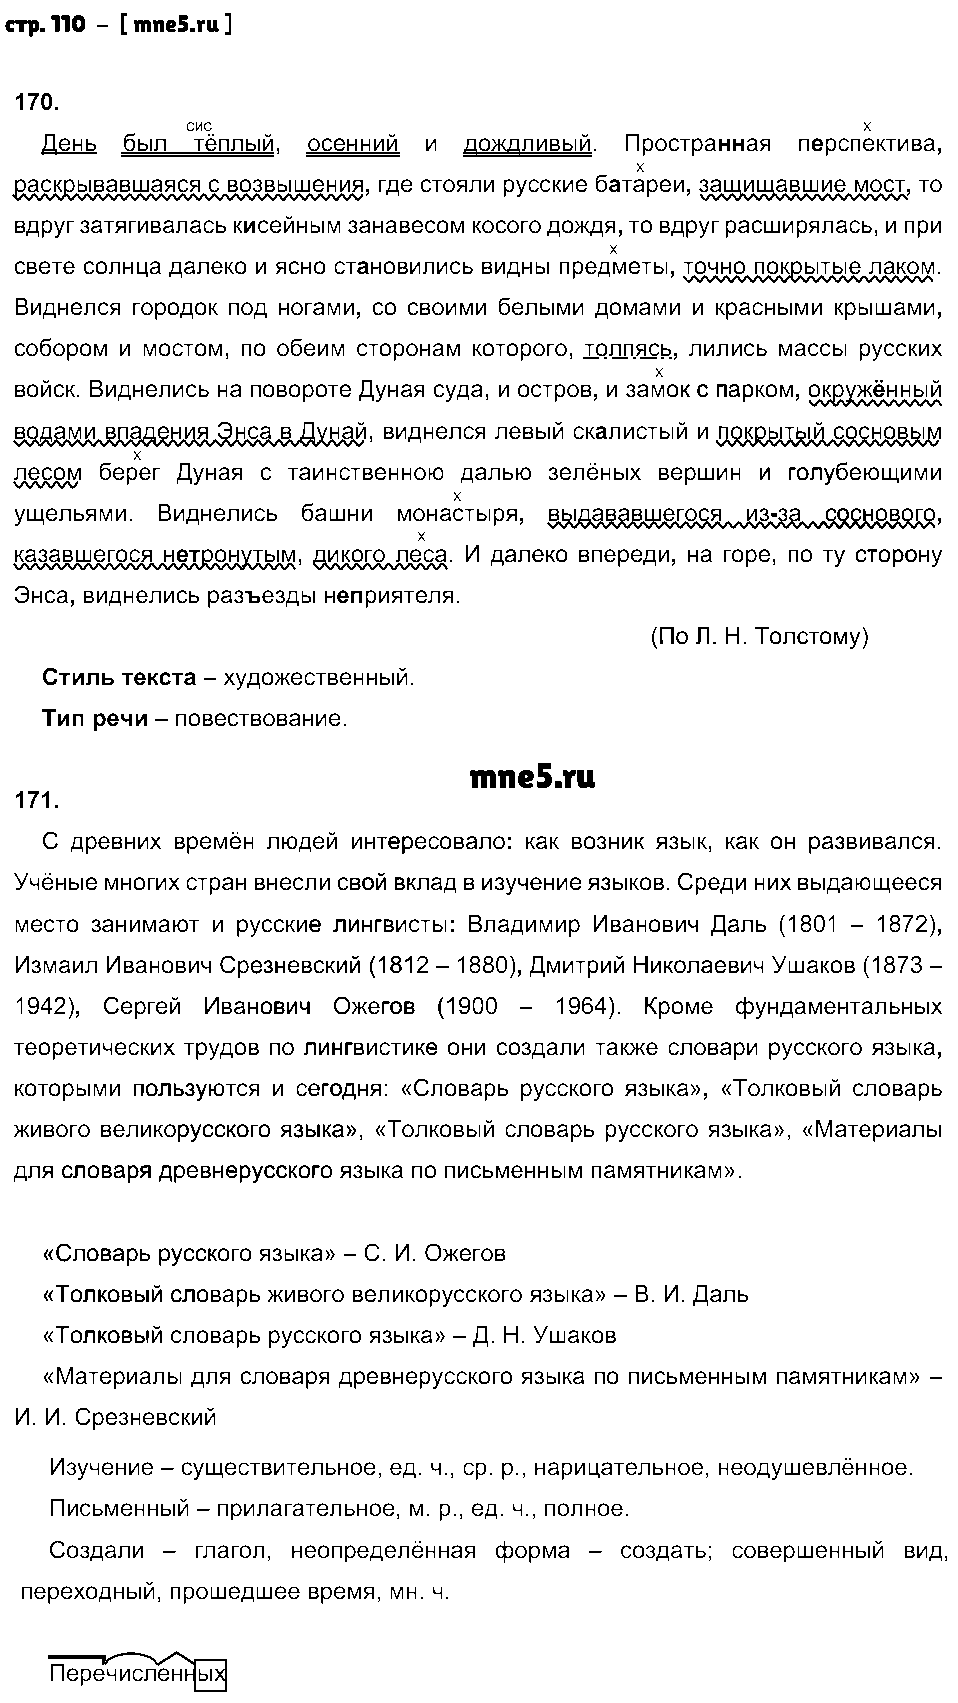 ГДЗ Русский язык 8 класс - стр. 110